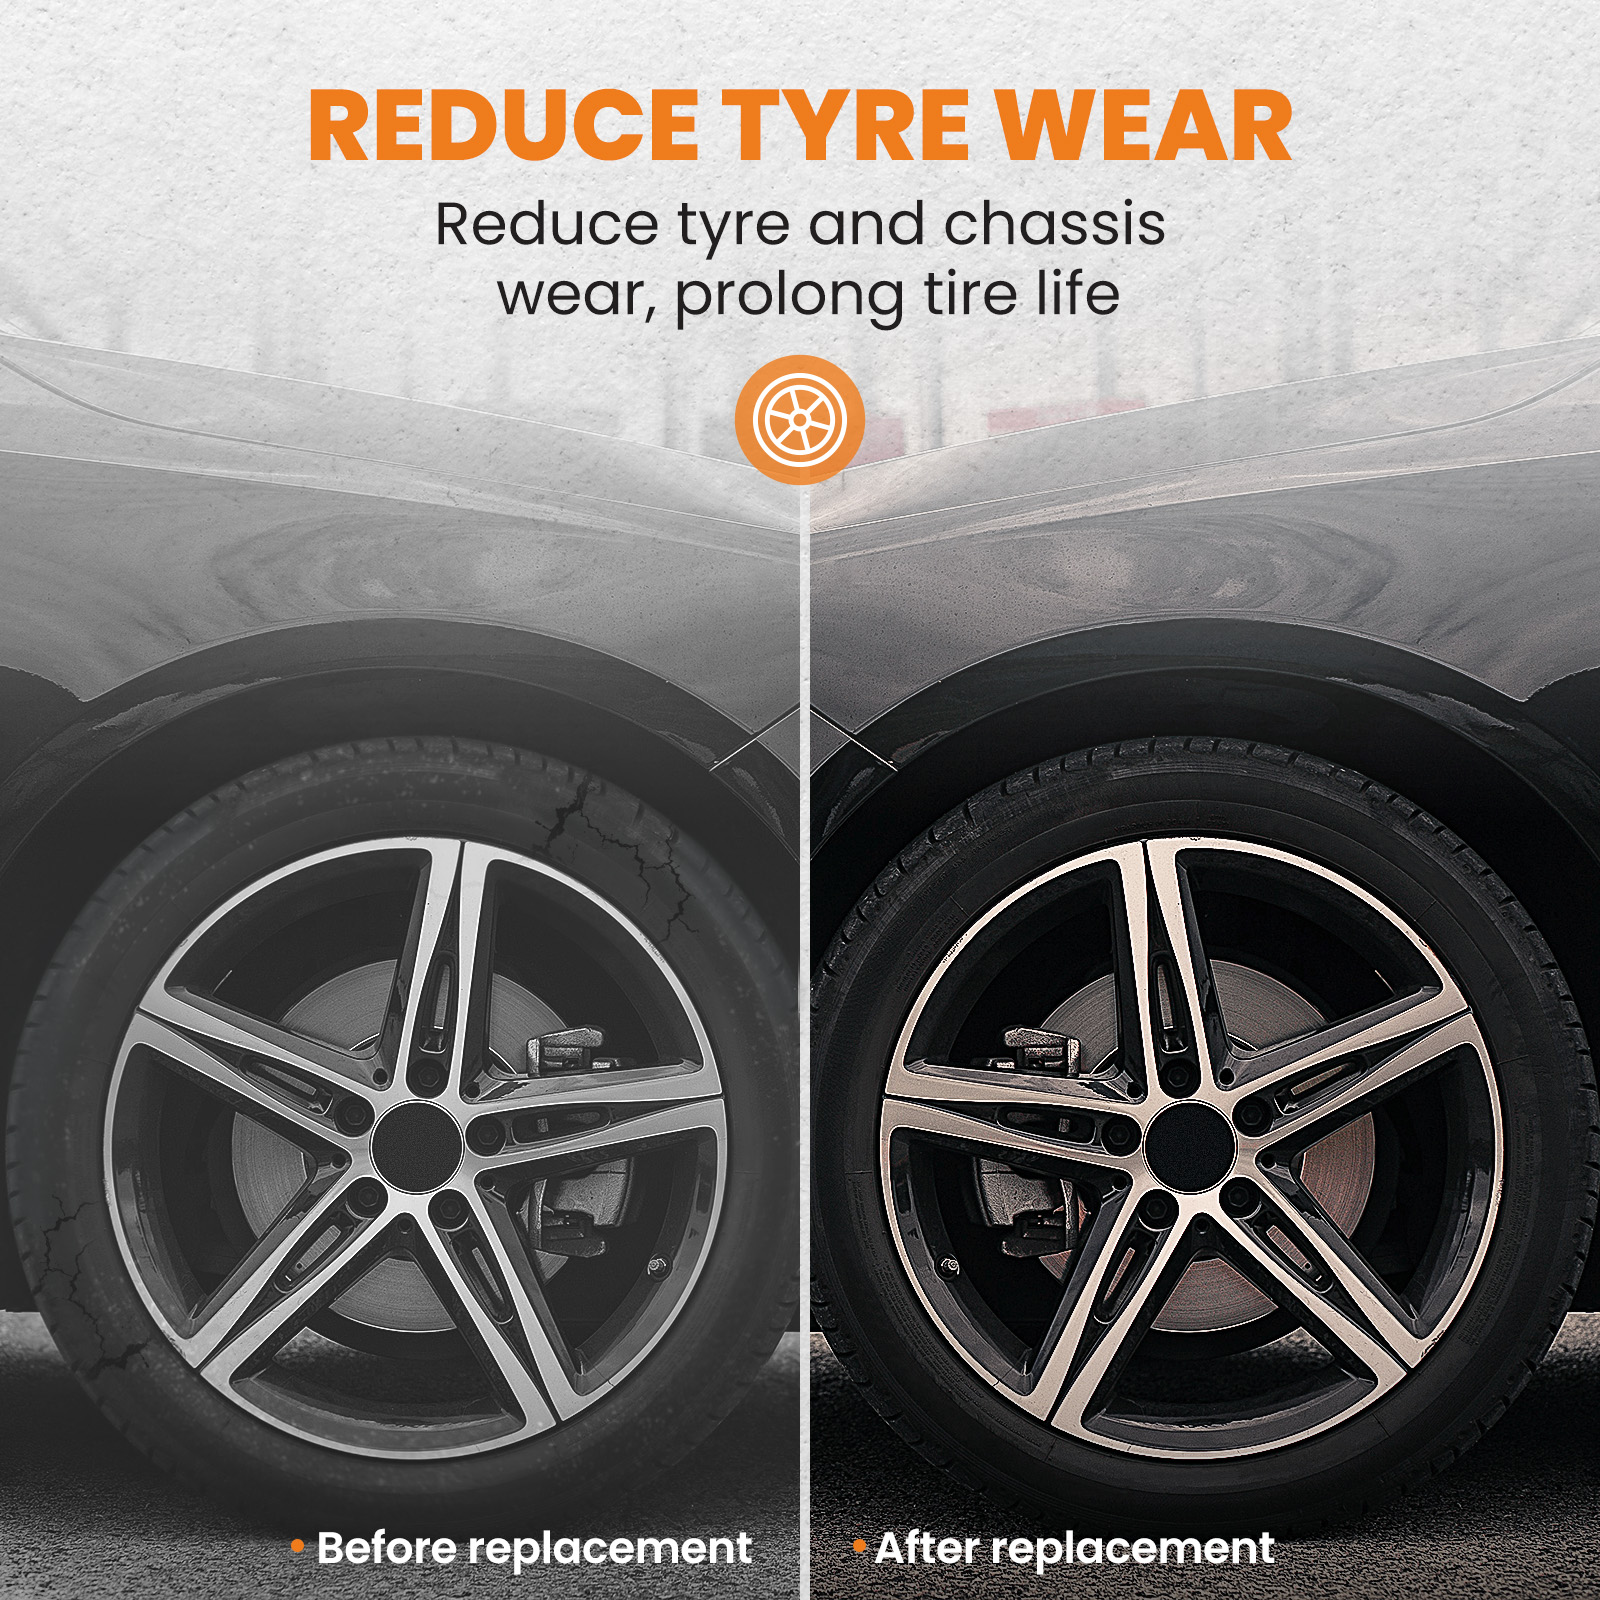 Reduce Tyre Wear